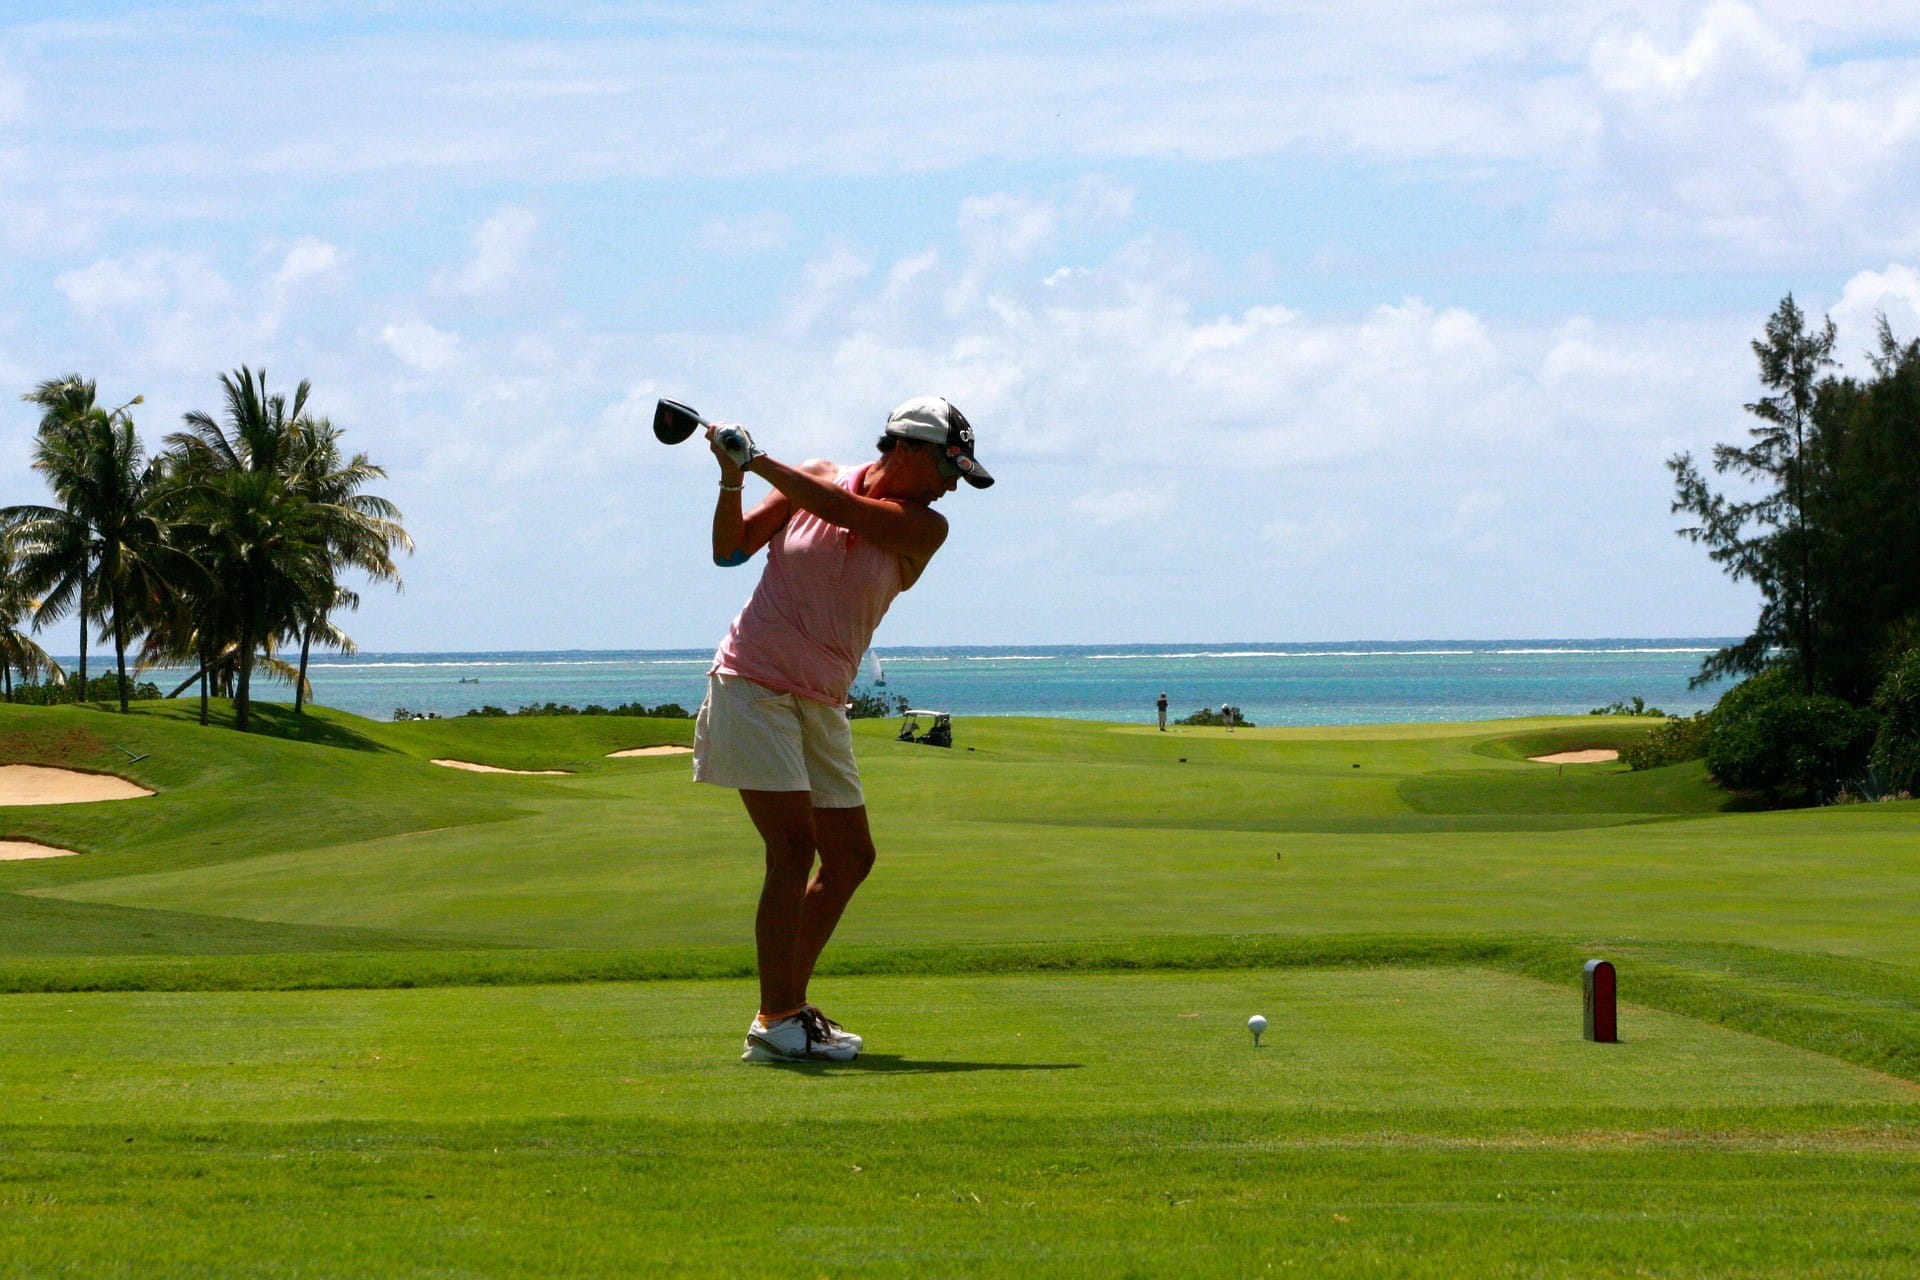 Eine Golfspielerin schwingt den Schläger auf dem Golfplatz. Im Hintergrund ist Wasser zu sehen.